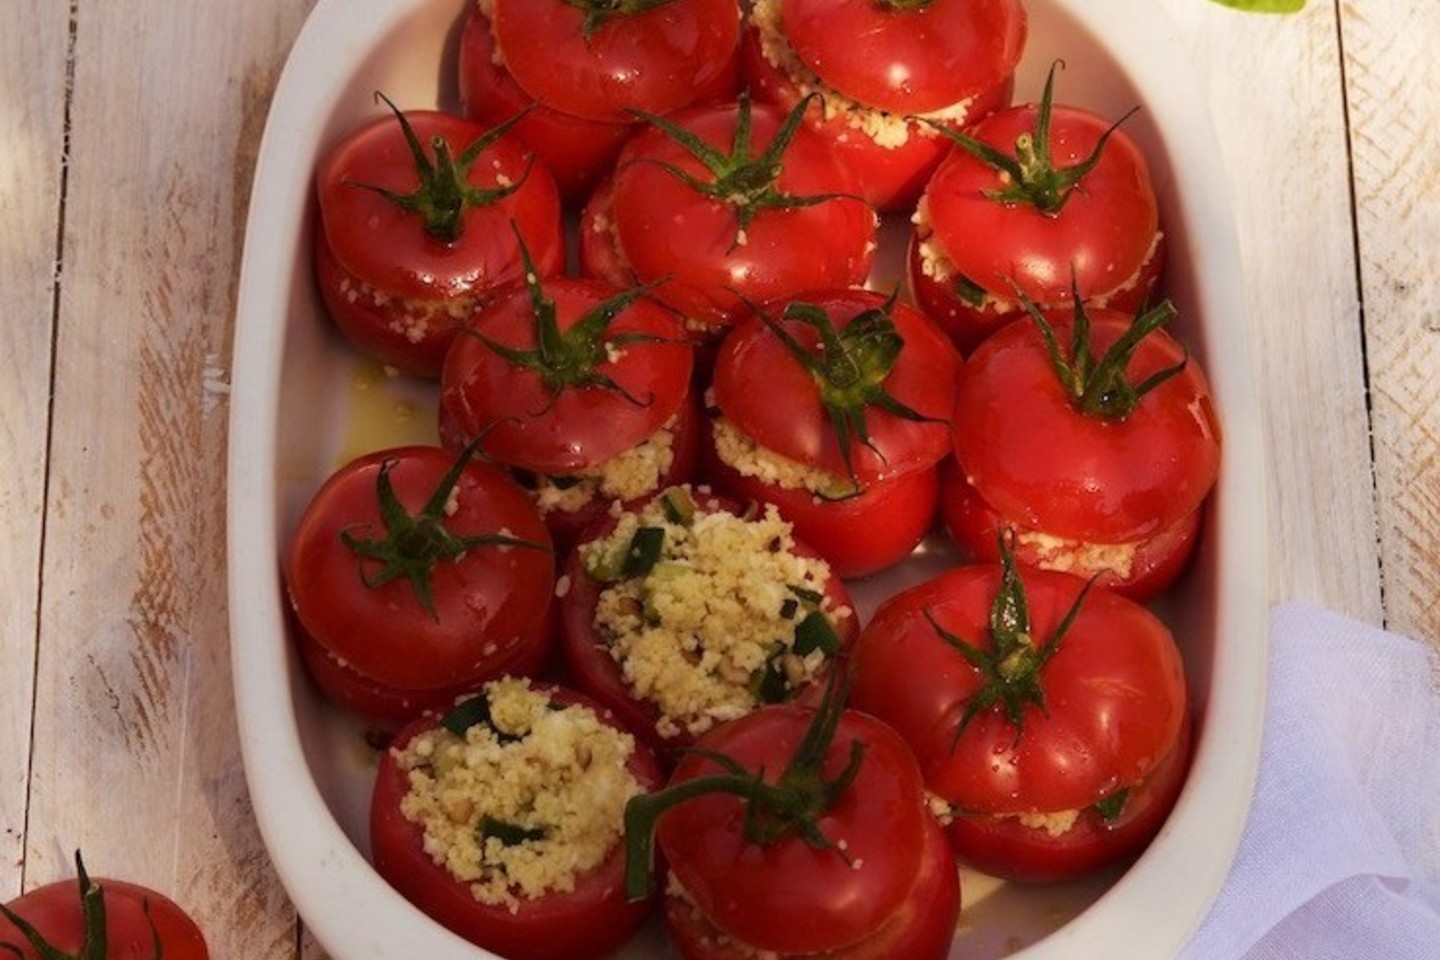 Įdaryti pomidorai.<br>Nuotr. iš duokdruskos.com